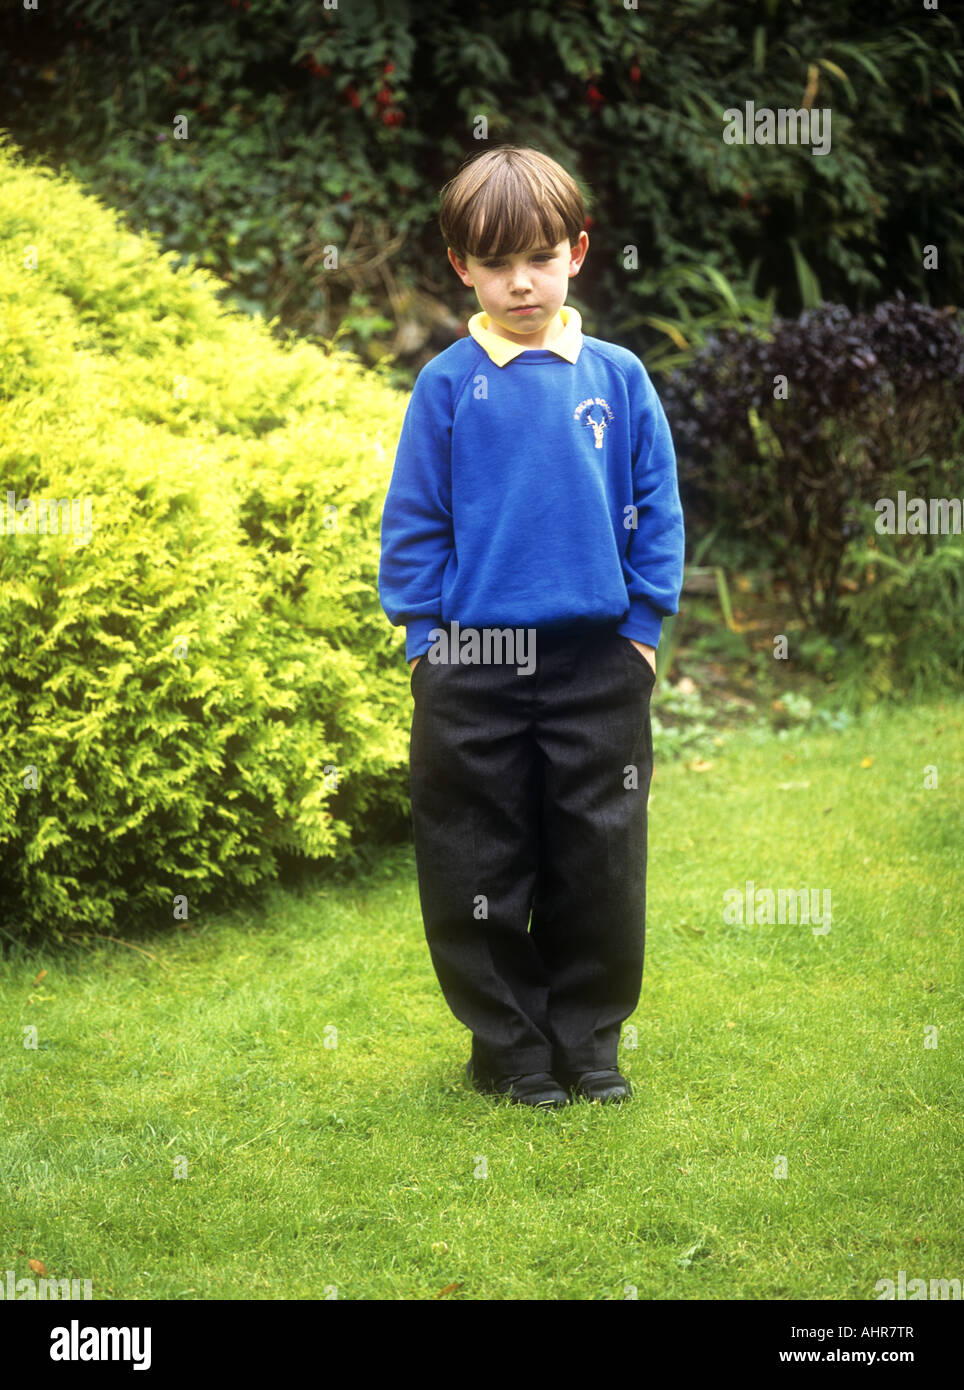 Jeune garçon portant un uniforme scolaire qui a l'air triste, Angleterre, Royaume-Uni Banque D'Images